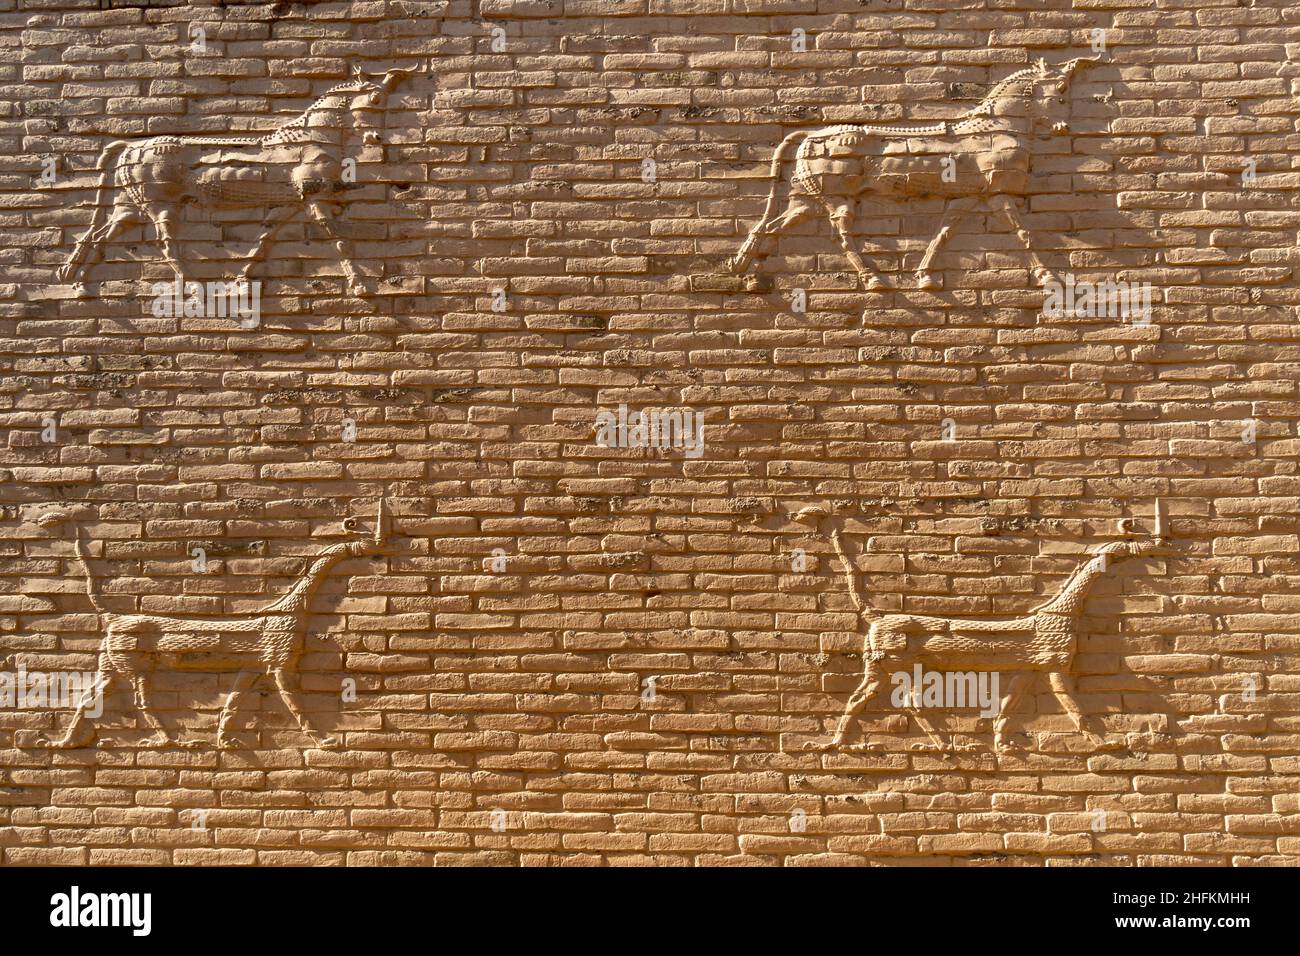 Rilievi alle mura dell'antica città di Babilonia, Iraq Foto Stock